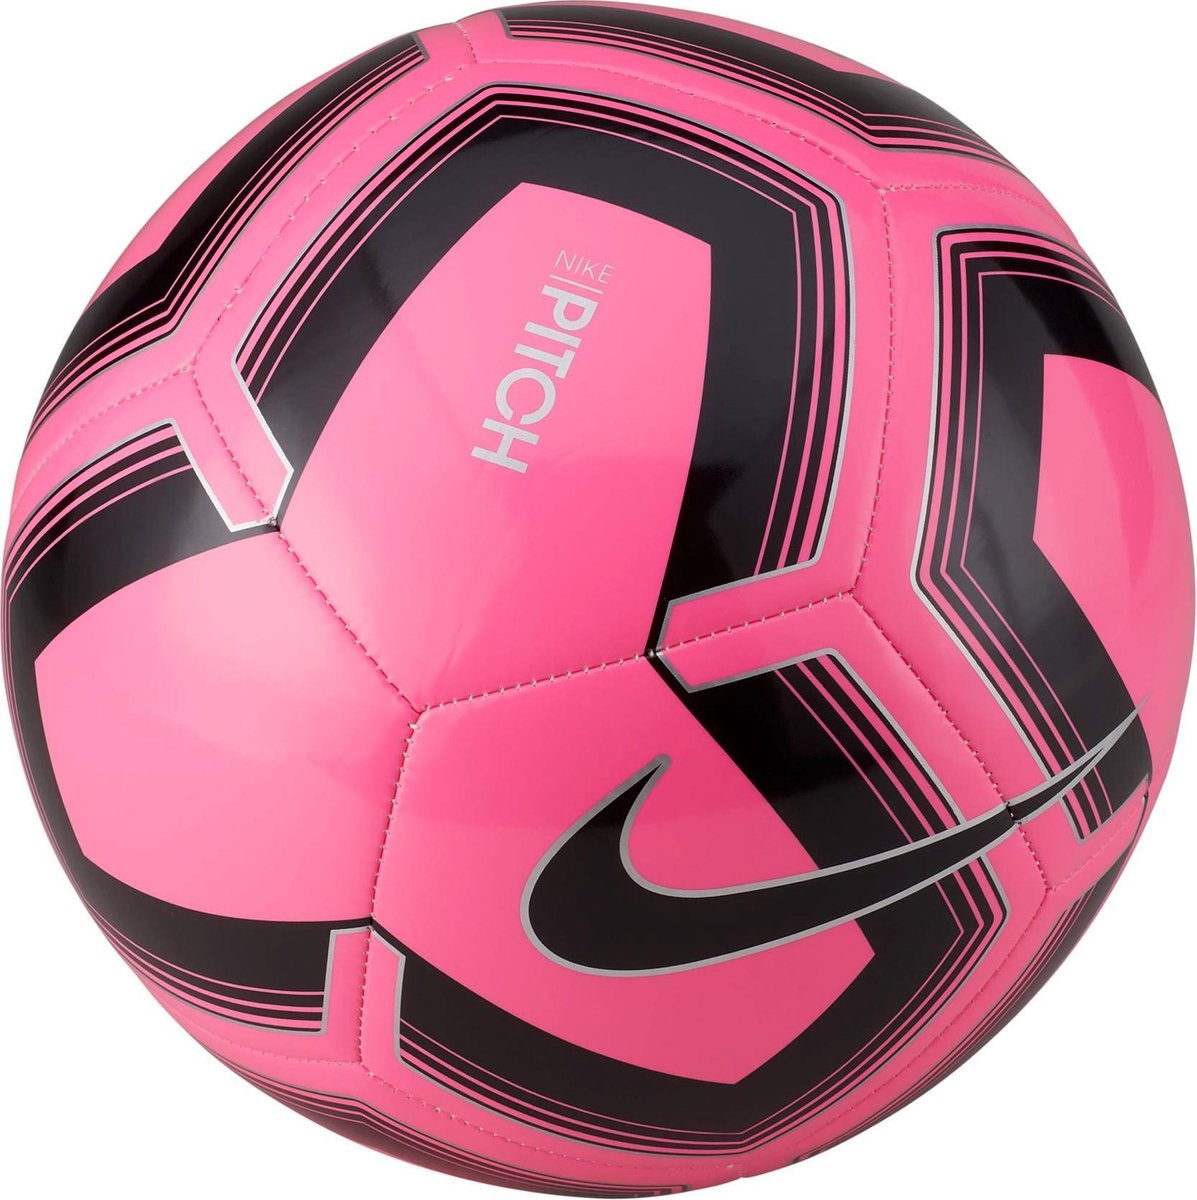 Nike VoetbalVolwassenen - roze/zwart/zilver bol.com